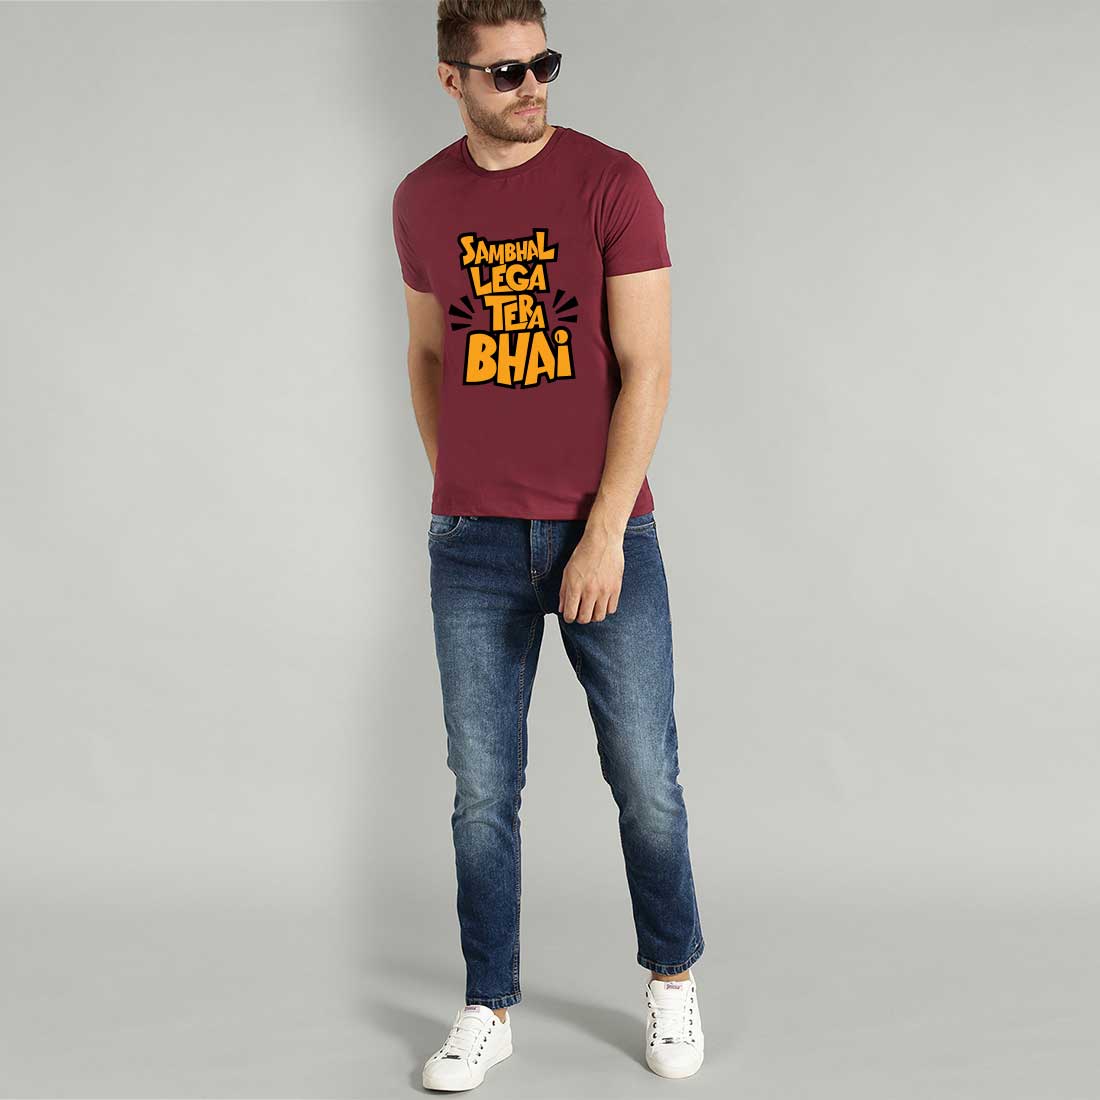 Shambhal Lega Tera Bhai  Maroon Men T-Shirt